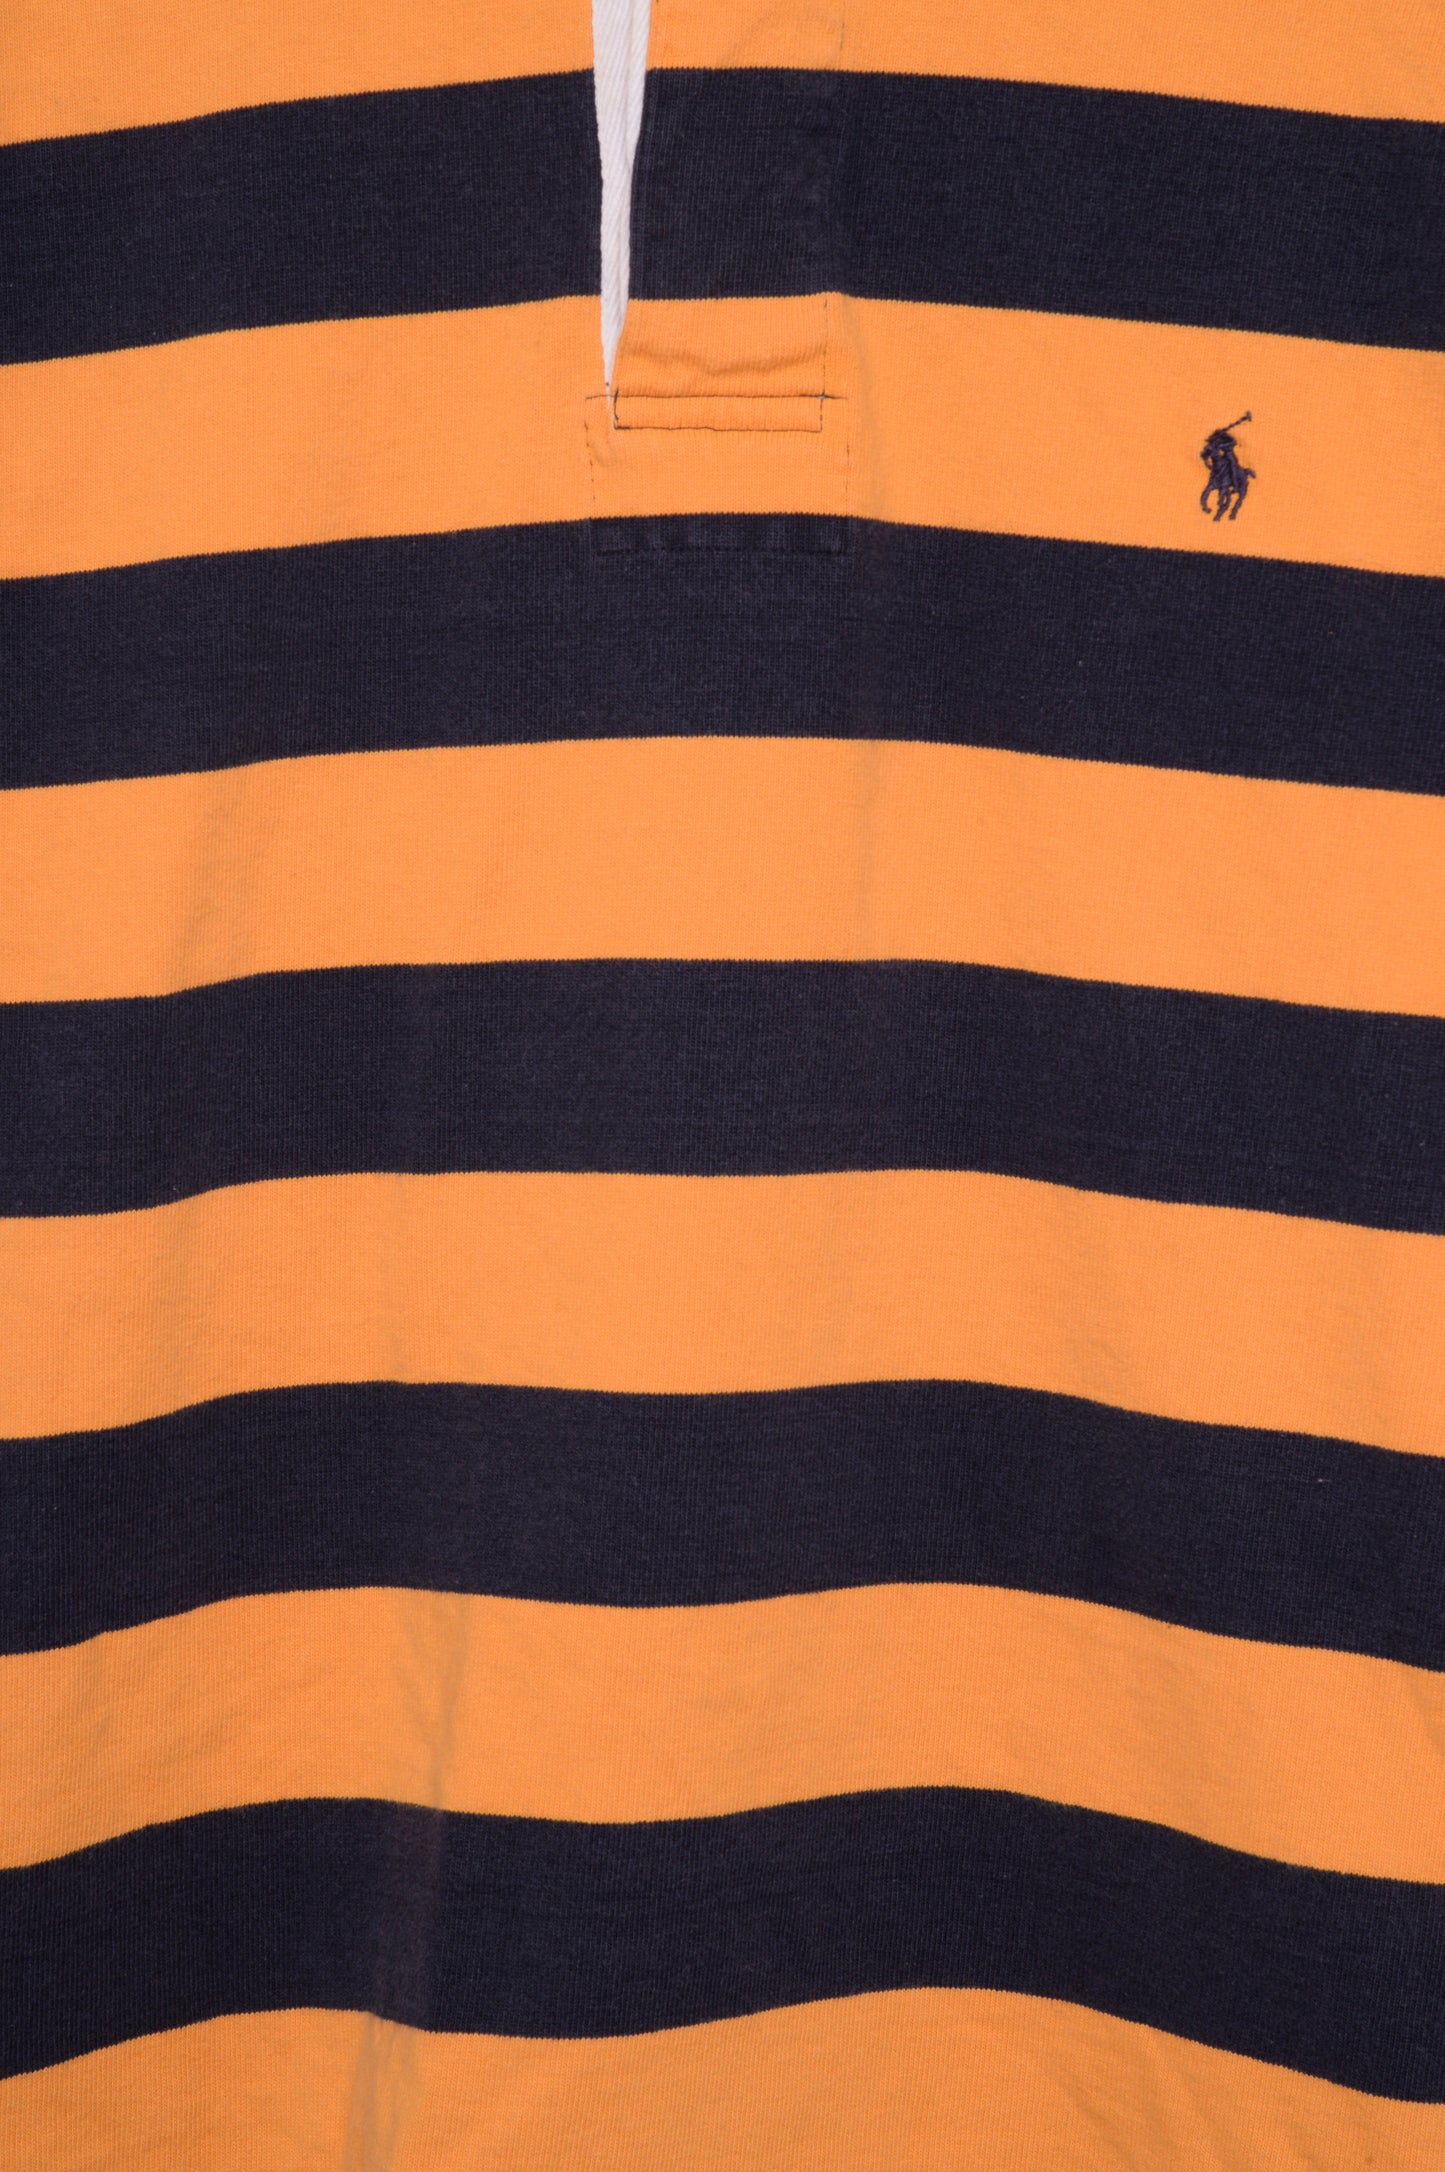 Ralph Lauren Rugby Shirt